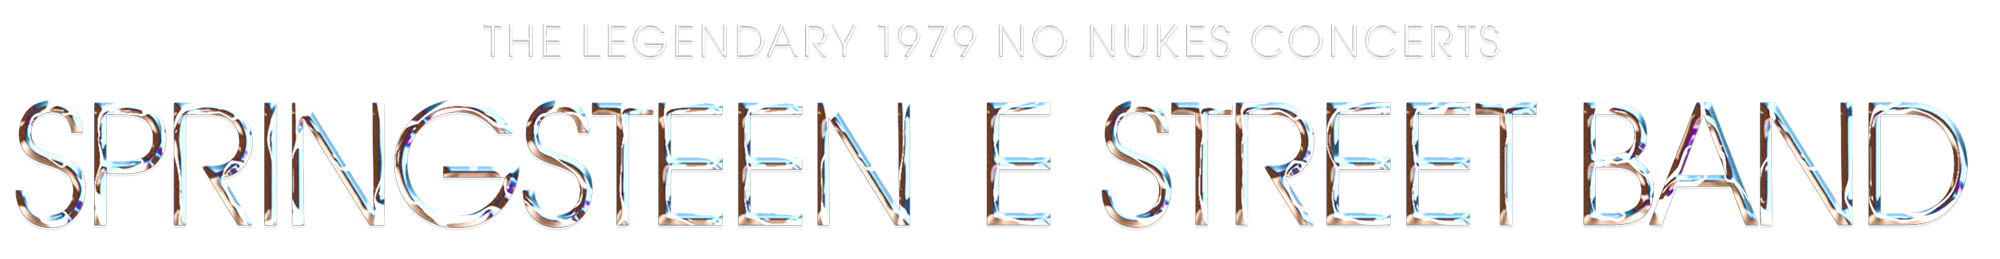 ブルース・スプリングスティーン＆Eストリート・バンド『ノー・ニュークス・コンサート1979』